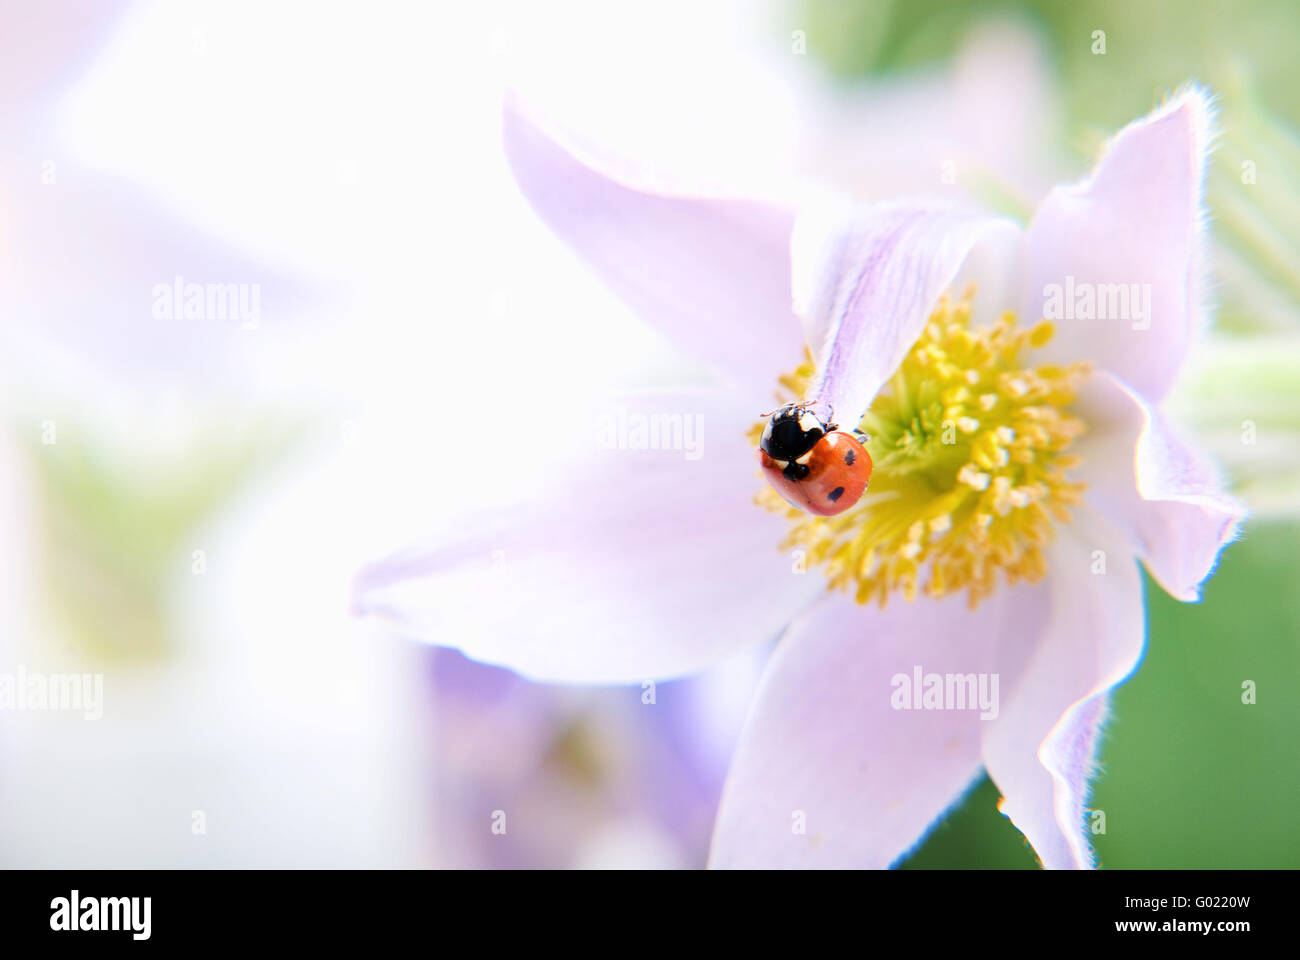 Ladybird on flower Stock Photo